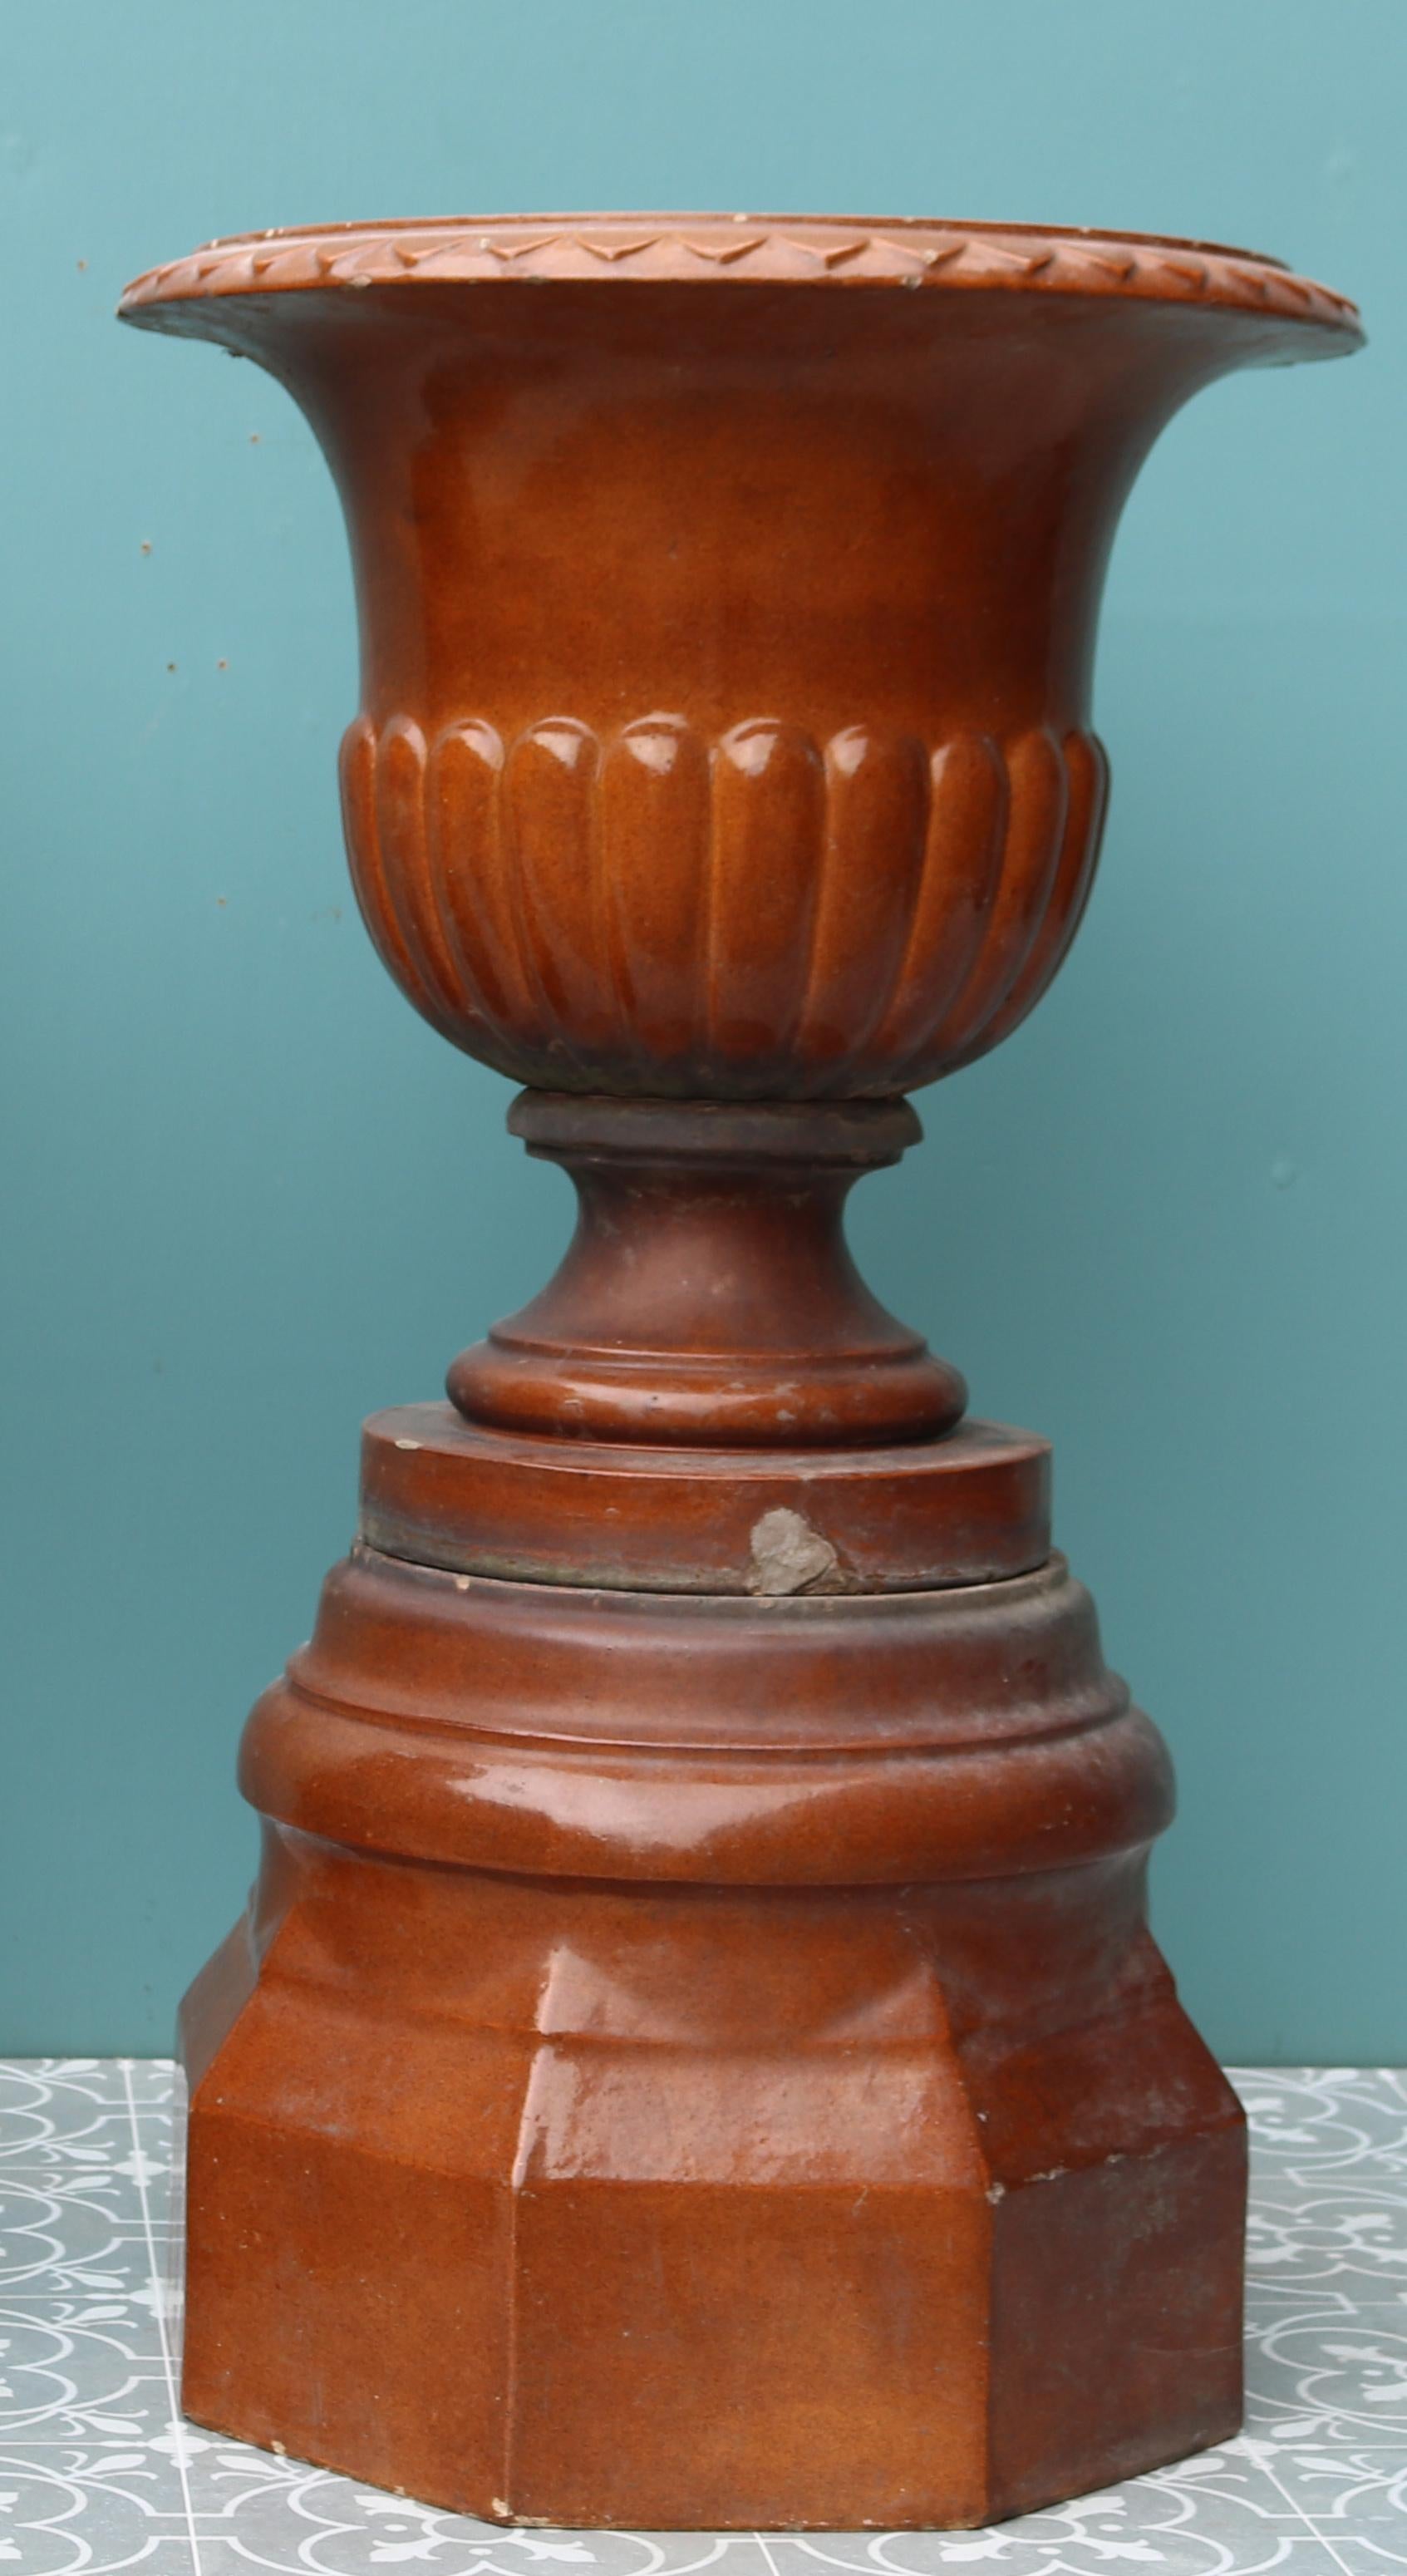 Deux urnes de jardin écossaises glacées à la mélasse sur piédestal.

Dimensions supplémentaires (chacune) :

Diamètre de l'urne 48 cm

Base 40 x 40 cm

Poids 45 kg